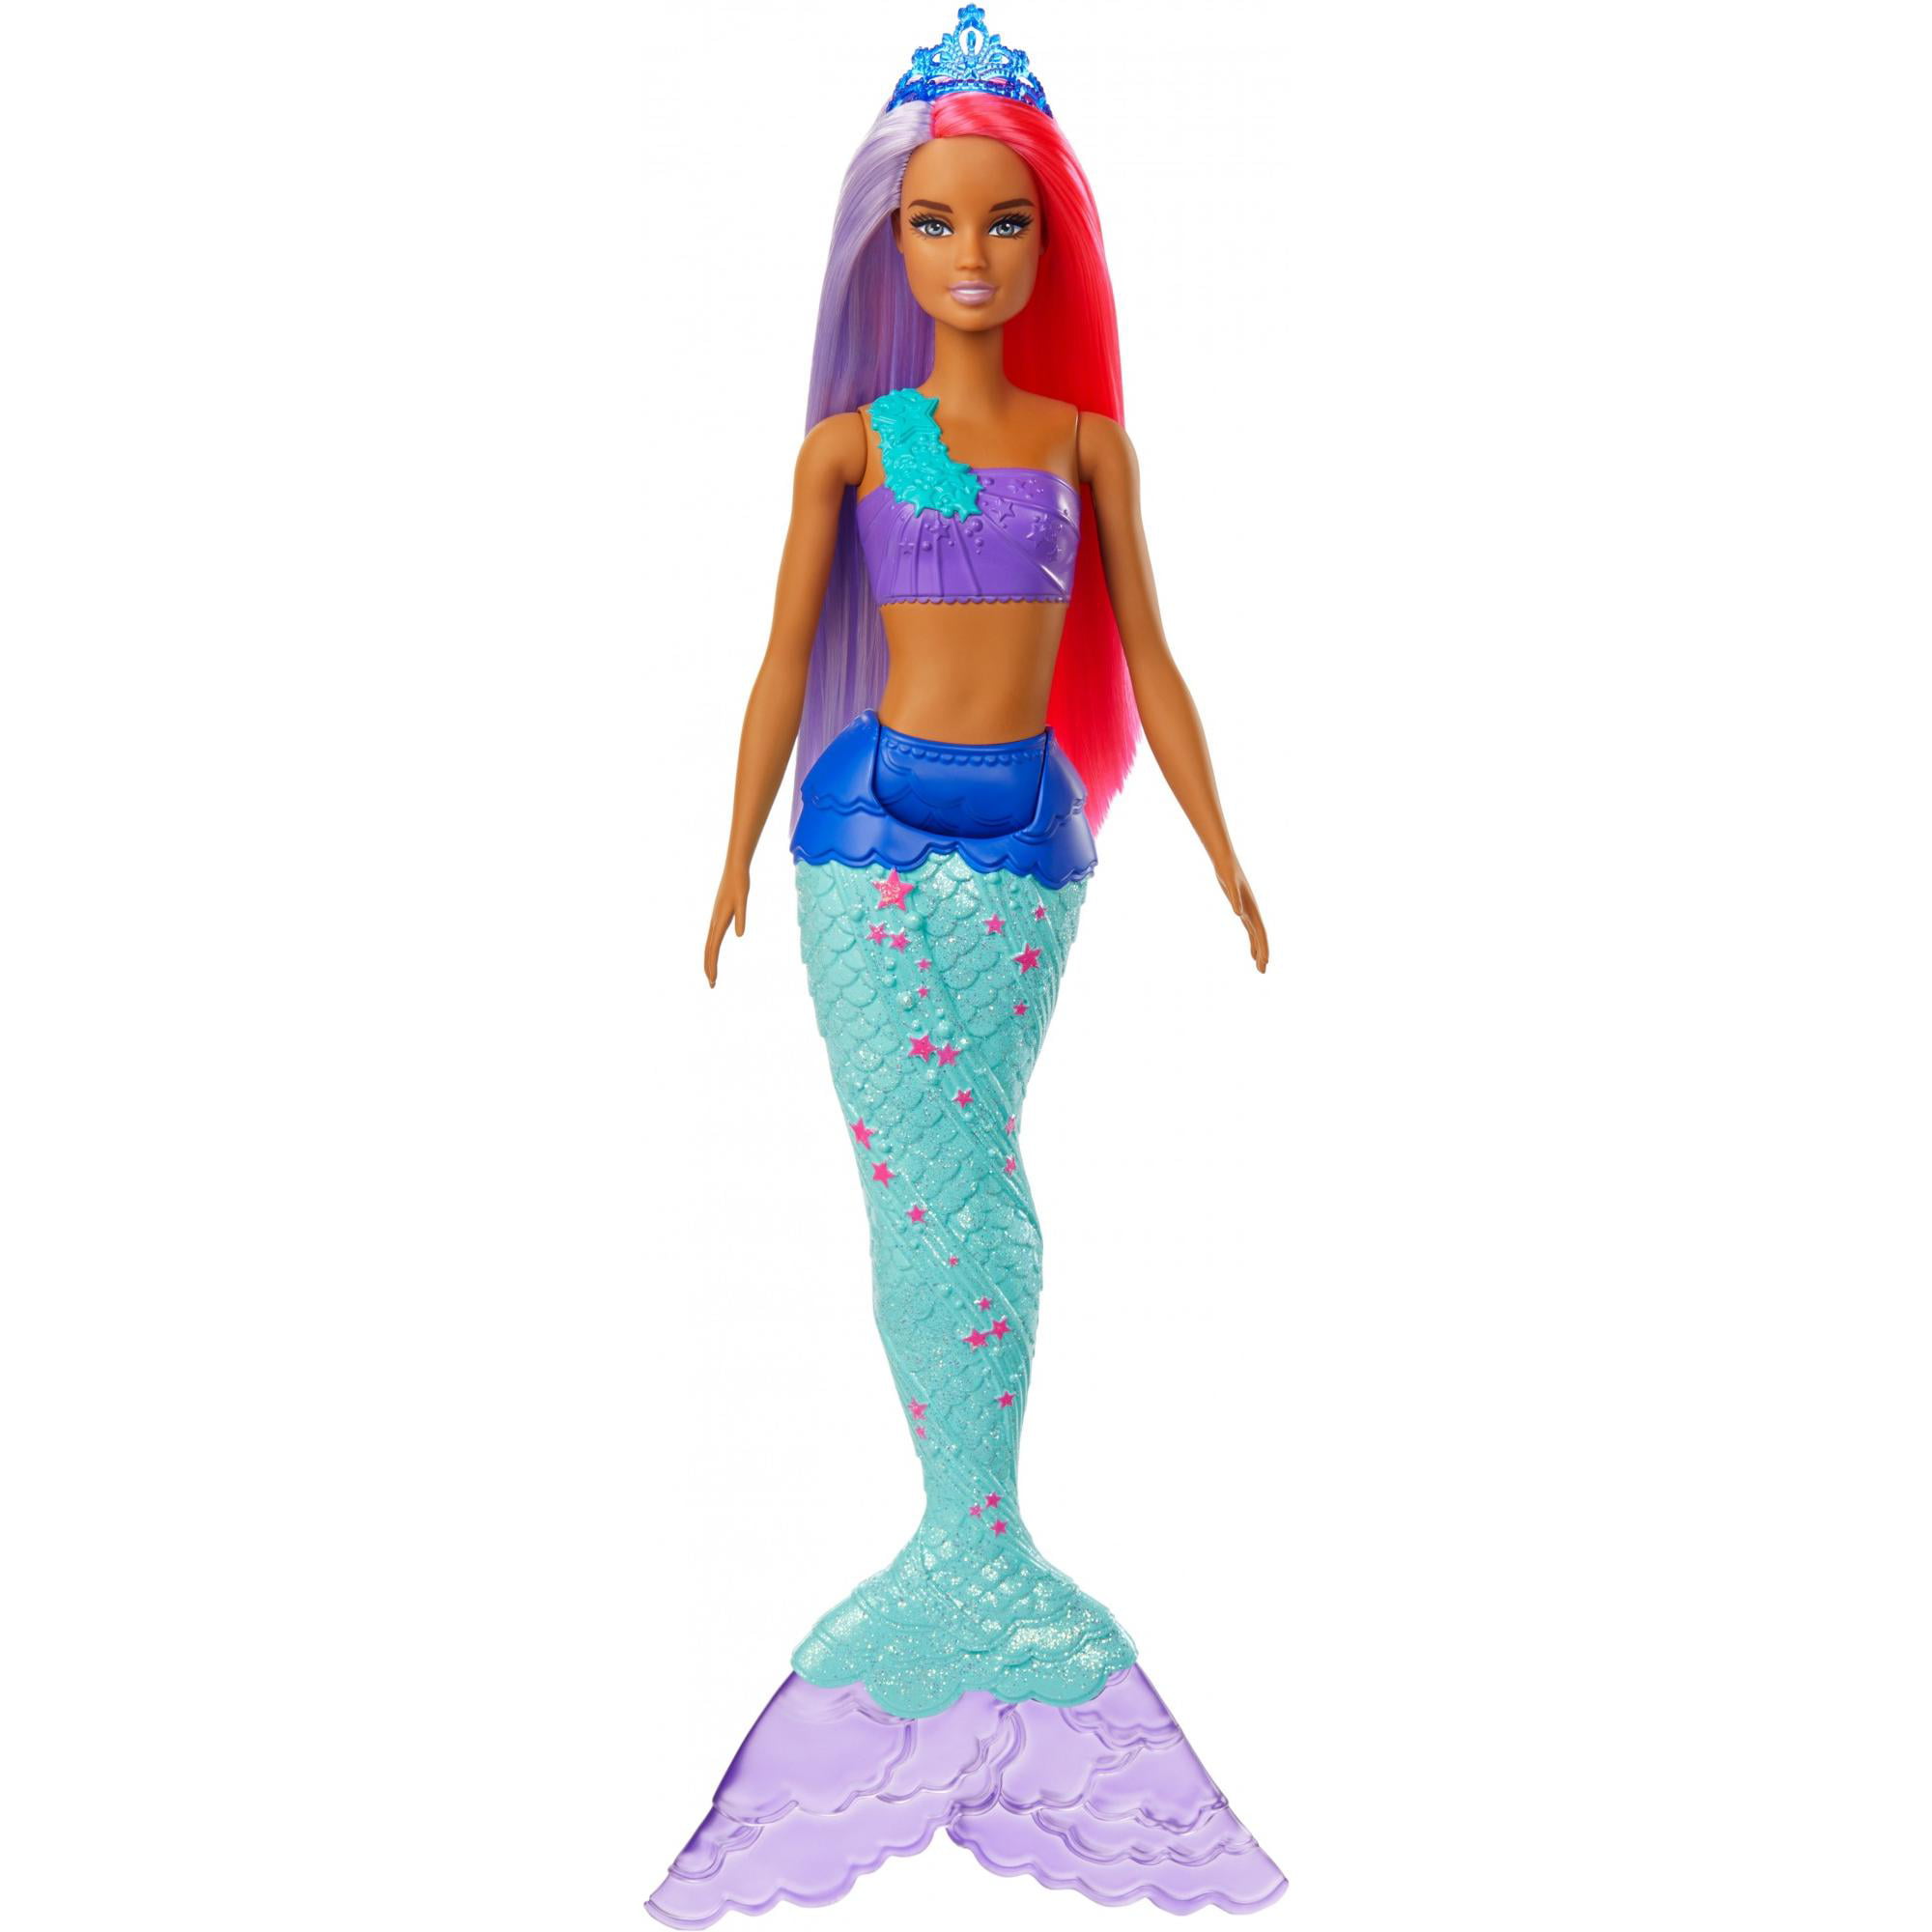 Barbie Dreamtopia Soap Bubbles and Fun Mermaid Yellow 